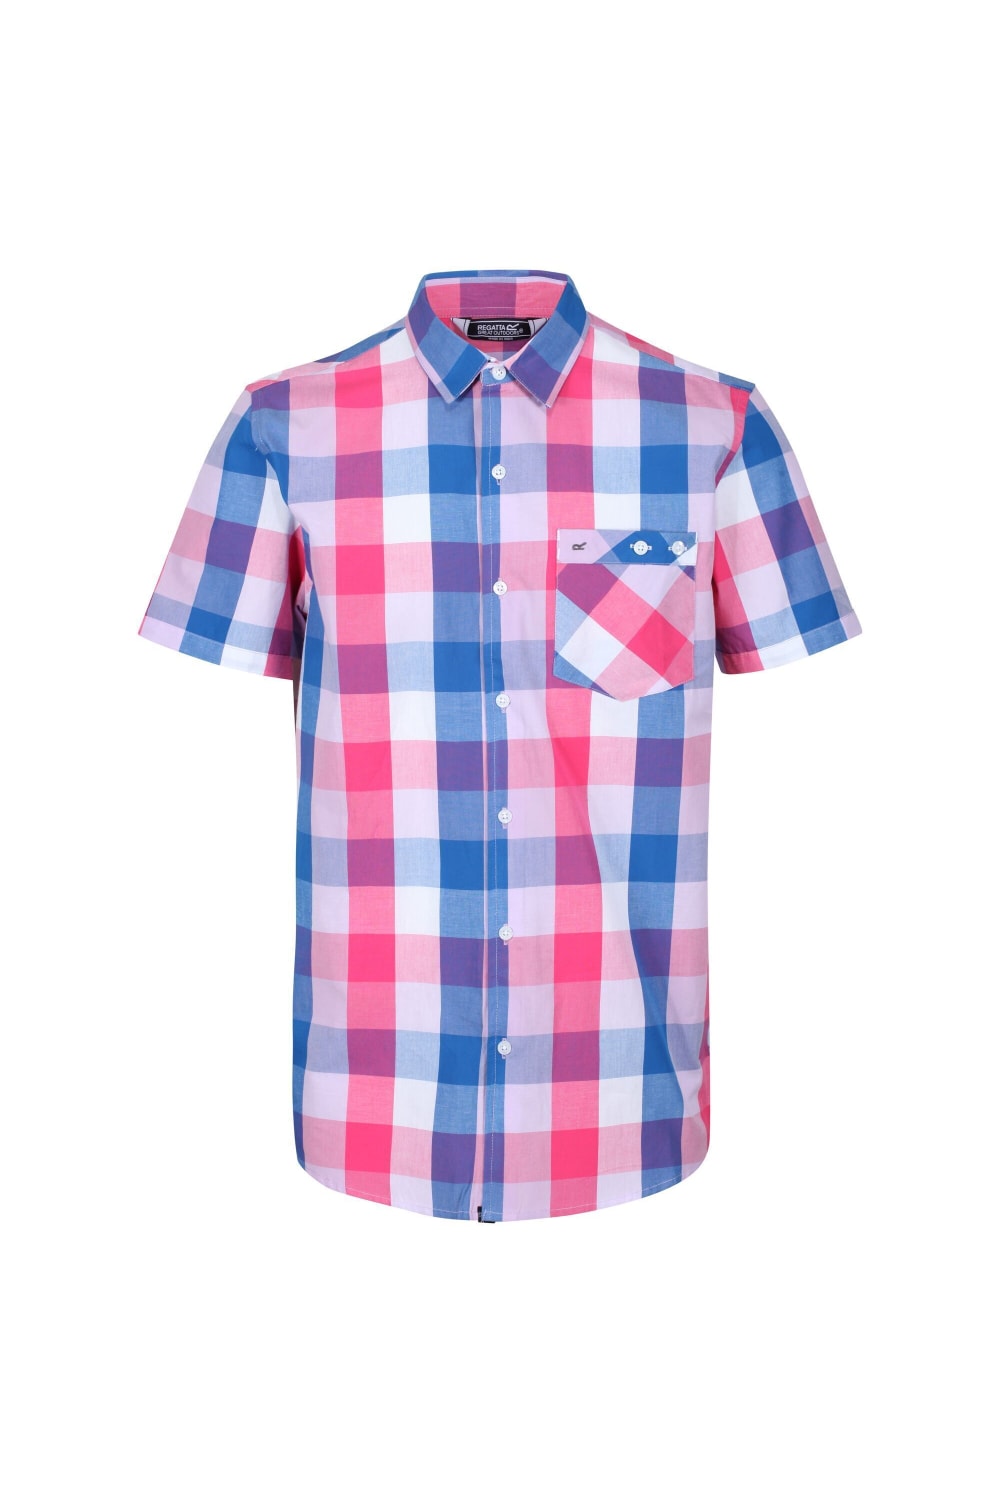 Mens Ramiel Checked Short-Sleeved Shirt - Bright Pink Check